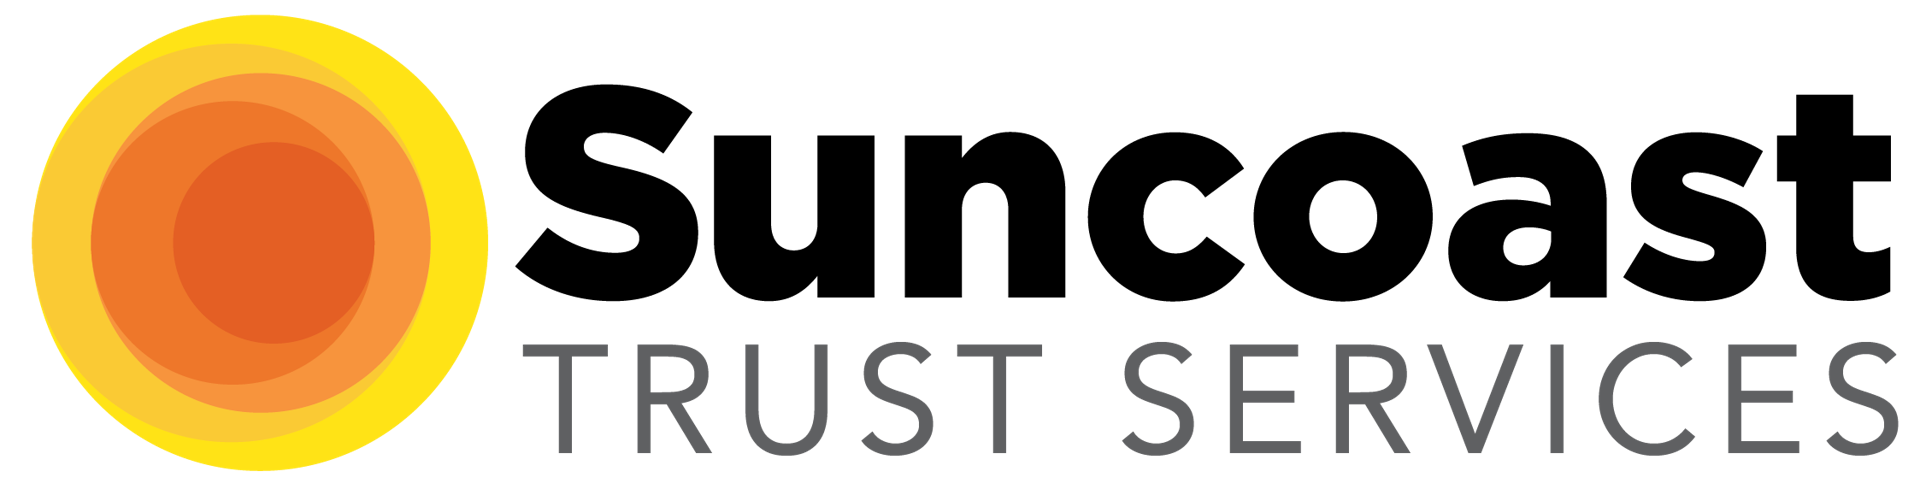 suncoast-trust-services